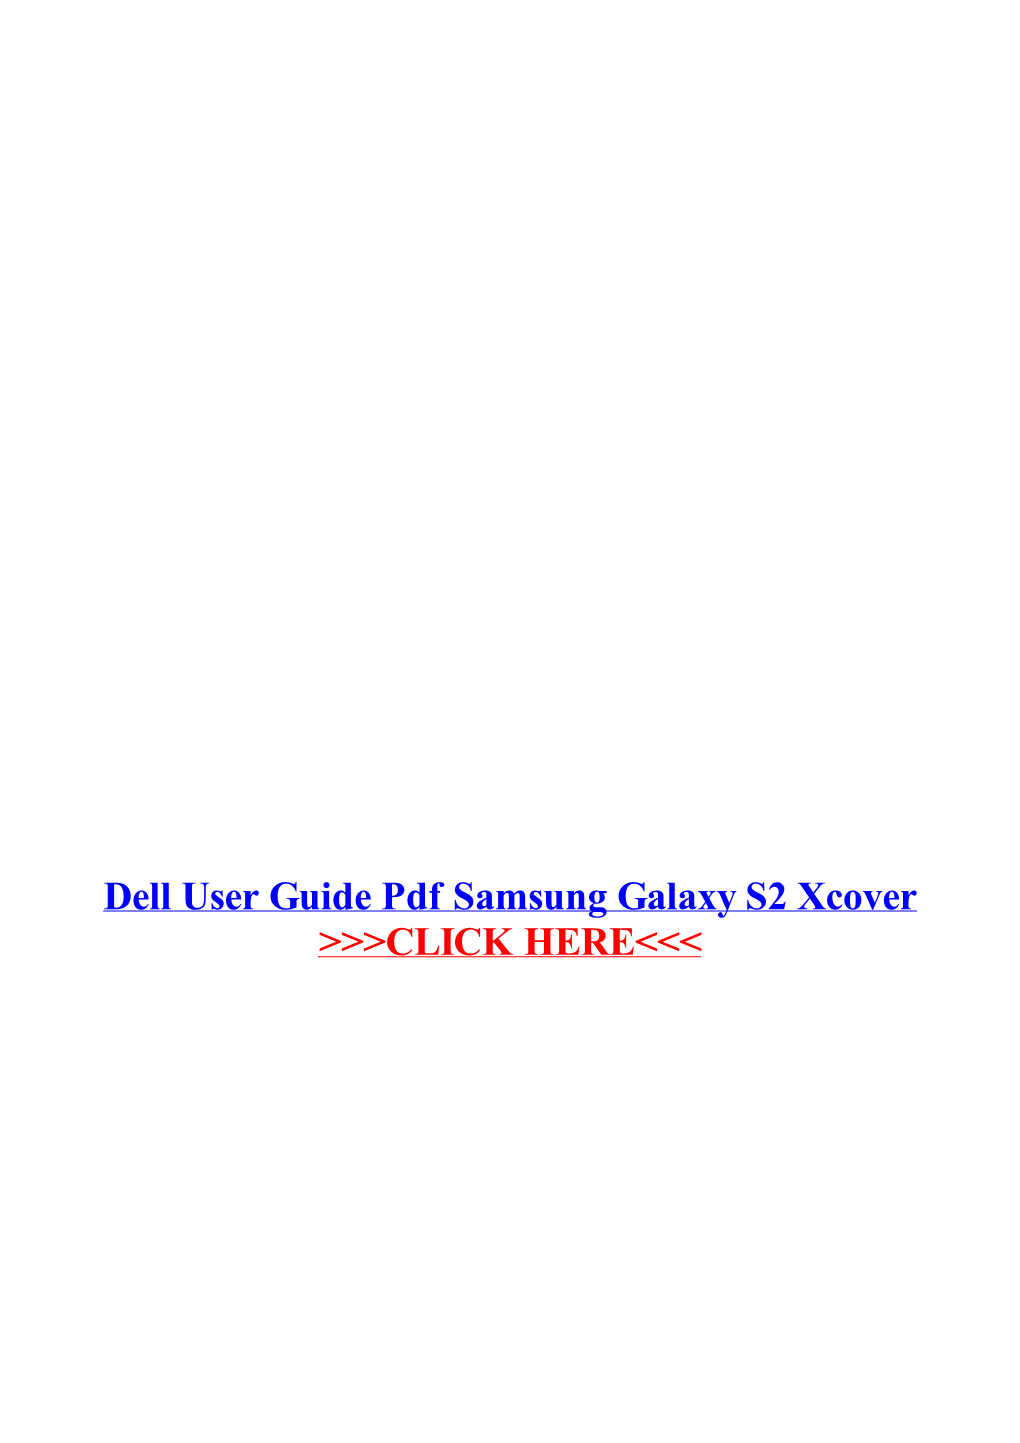 Dell User Guide Pdf Samsung Galaxy S2 Xcover